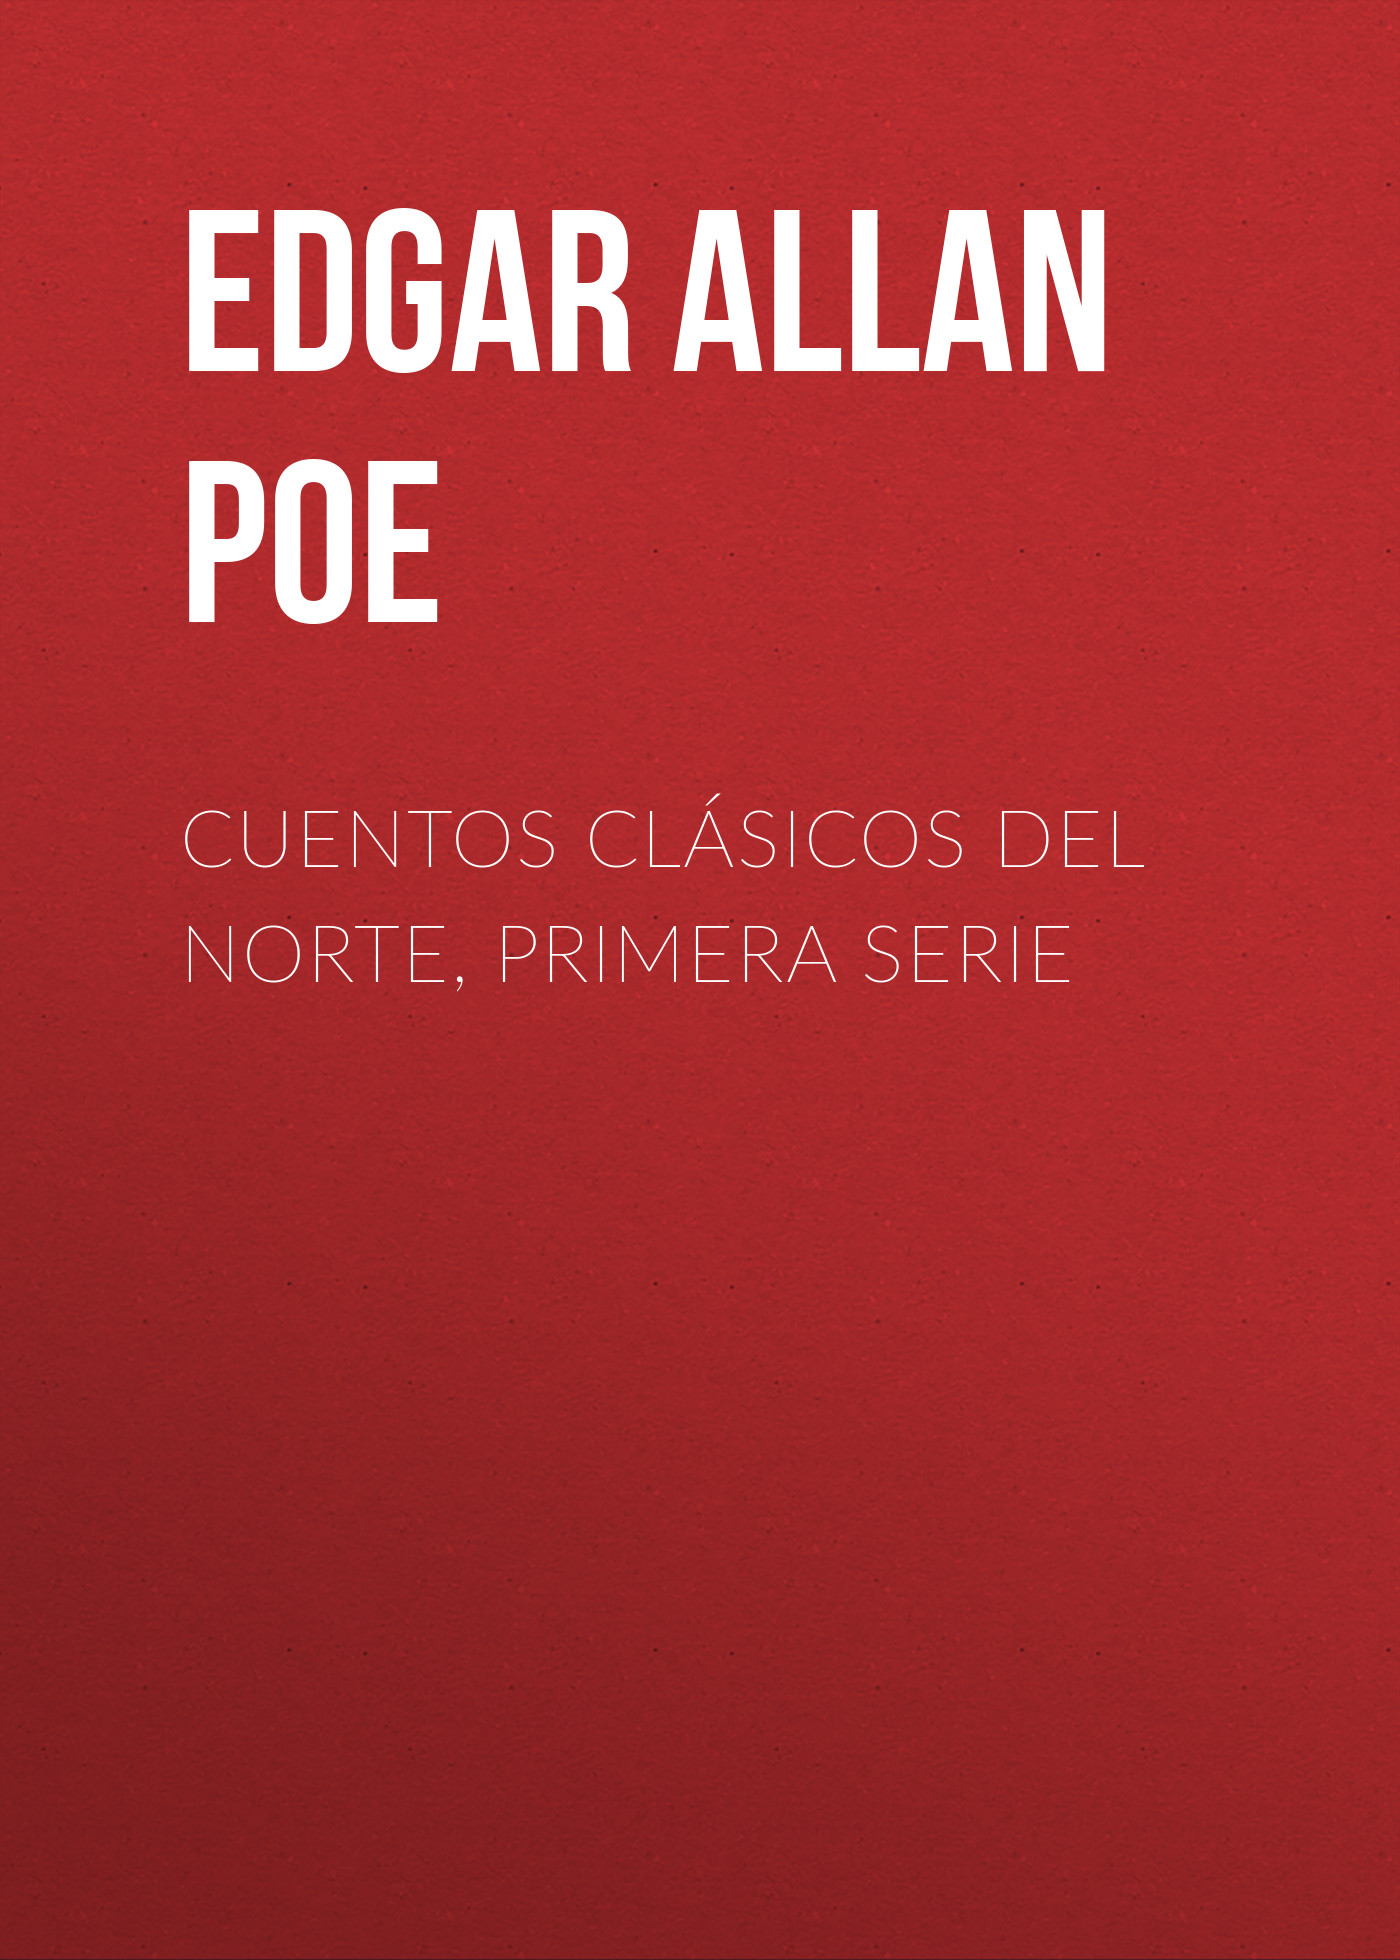 Книга Cuentos Clásicos del Norte, Primera Serie из серии , созданная Edgar Poe, может относится к жанру Литература 19 века, Зарубежная старинная литература, Зарубежная классика. Стоимость электронной книги Cuentos Clásicos del Norte, Primera Serie с идентификатором 25292323 составляет 0 руб.